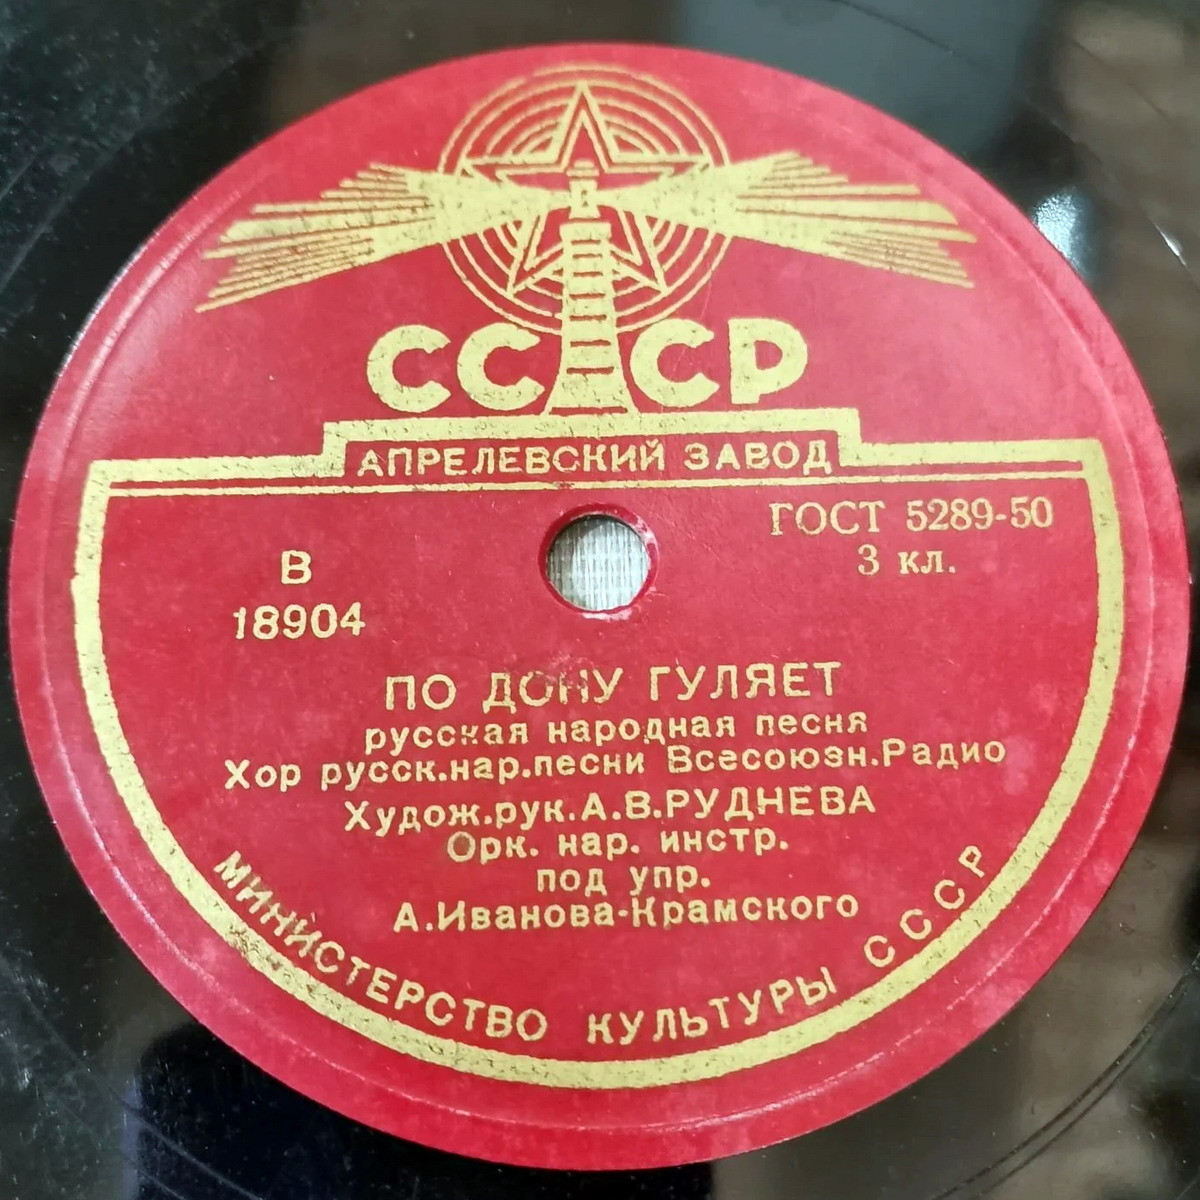 Хор русской народной песни Всесоюзного радио